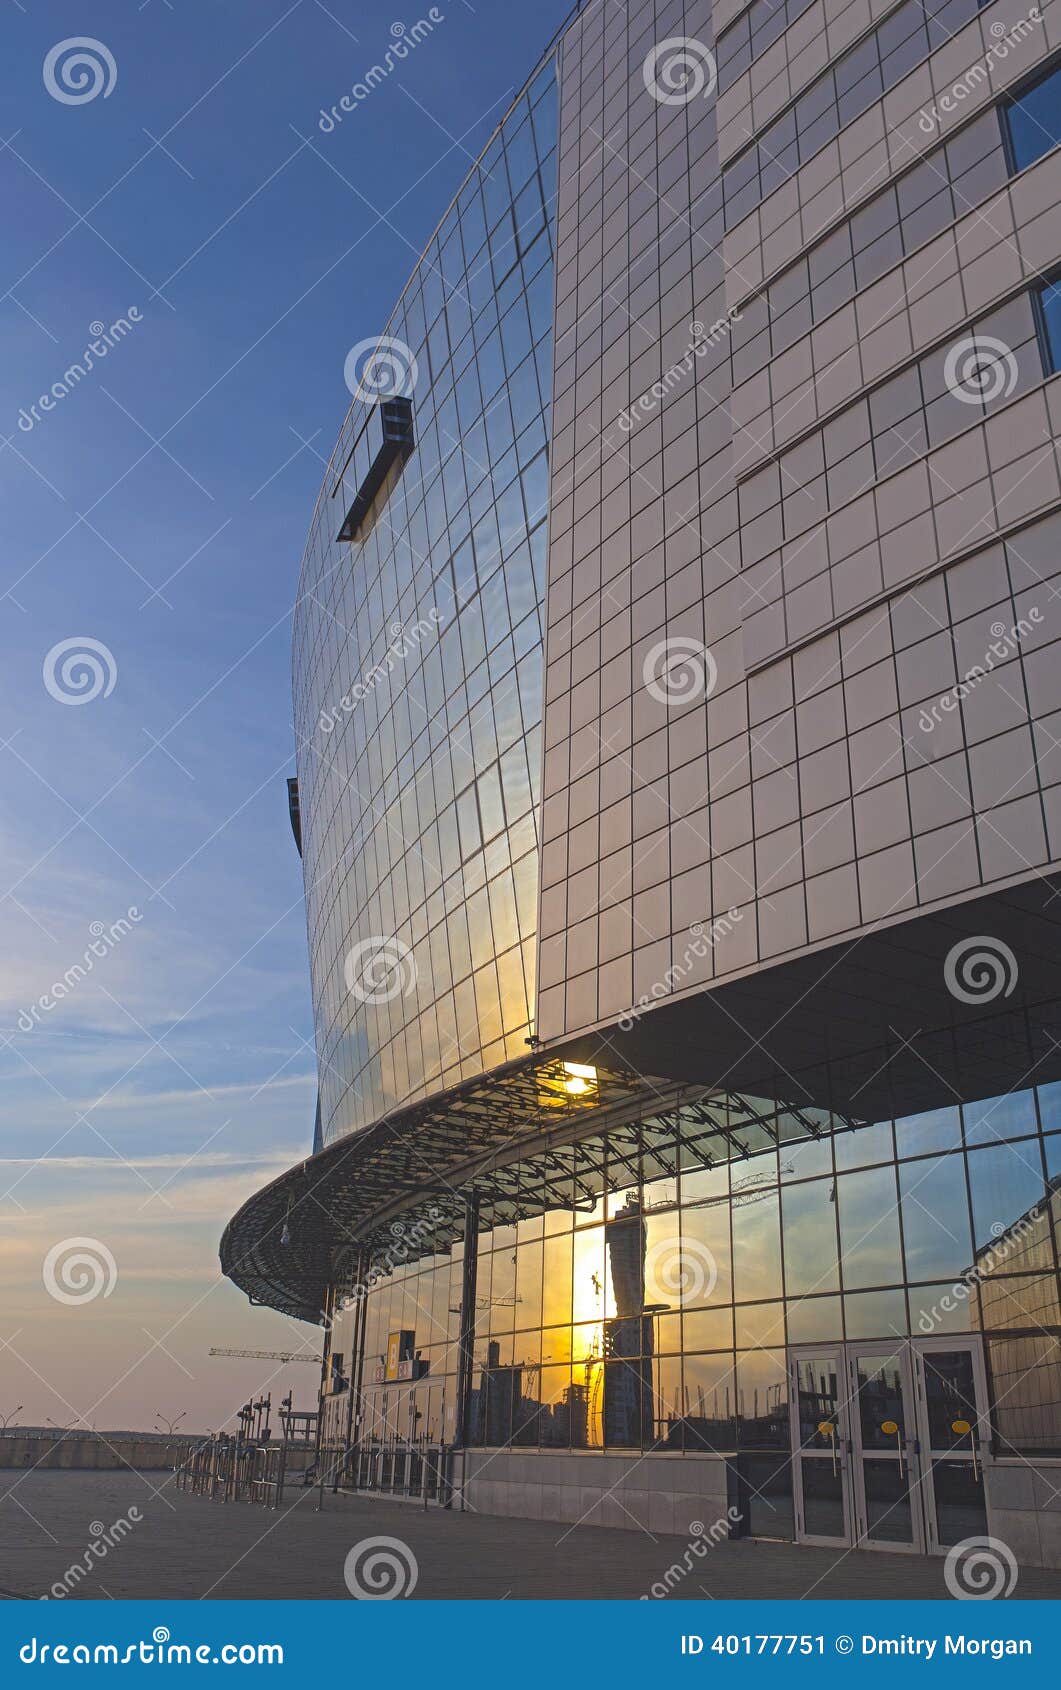 Tillbaka sida av detarena sportkomplexet. Byggdes för bärande nolla. Tillbaka sida av detarena sportkomplexet. Byggdes för att bära ut världsishockeymästerskapet 2014 i Minsk, Republiken Vitryssland. Den Minsk arenan är kapabel att innehålla upp till 15 000 åskådare. HDR bild. Vertikal sammansättning